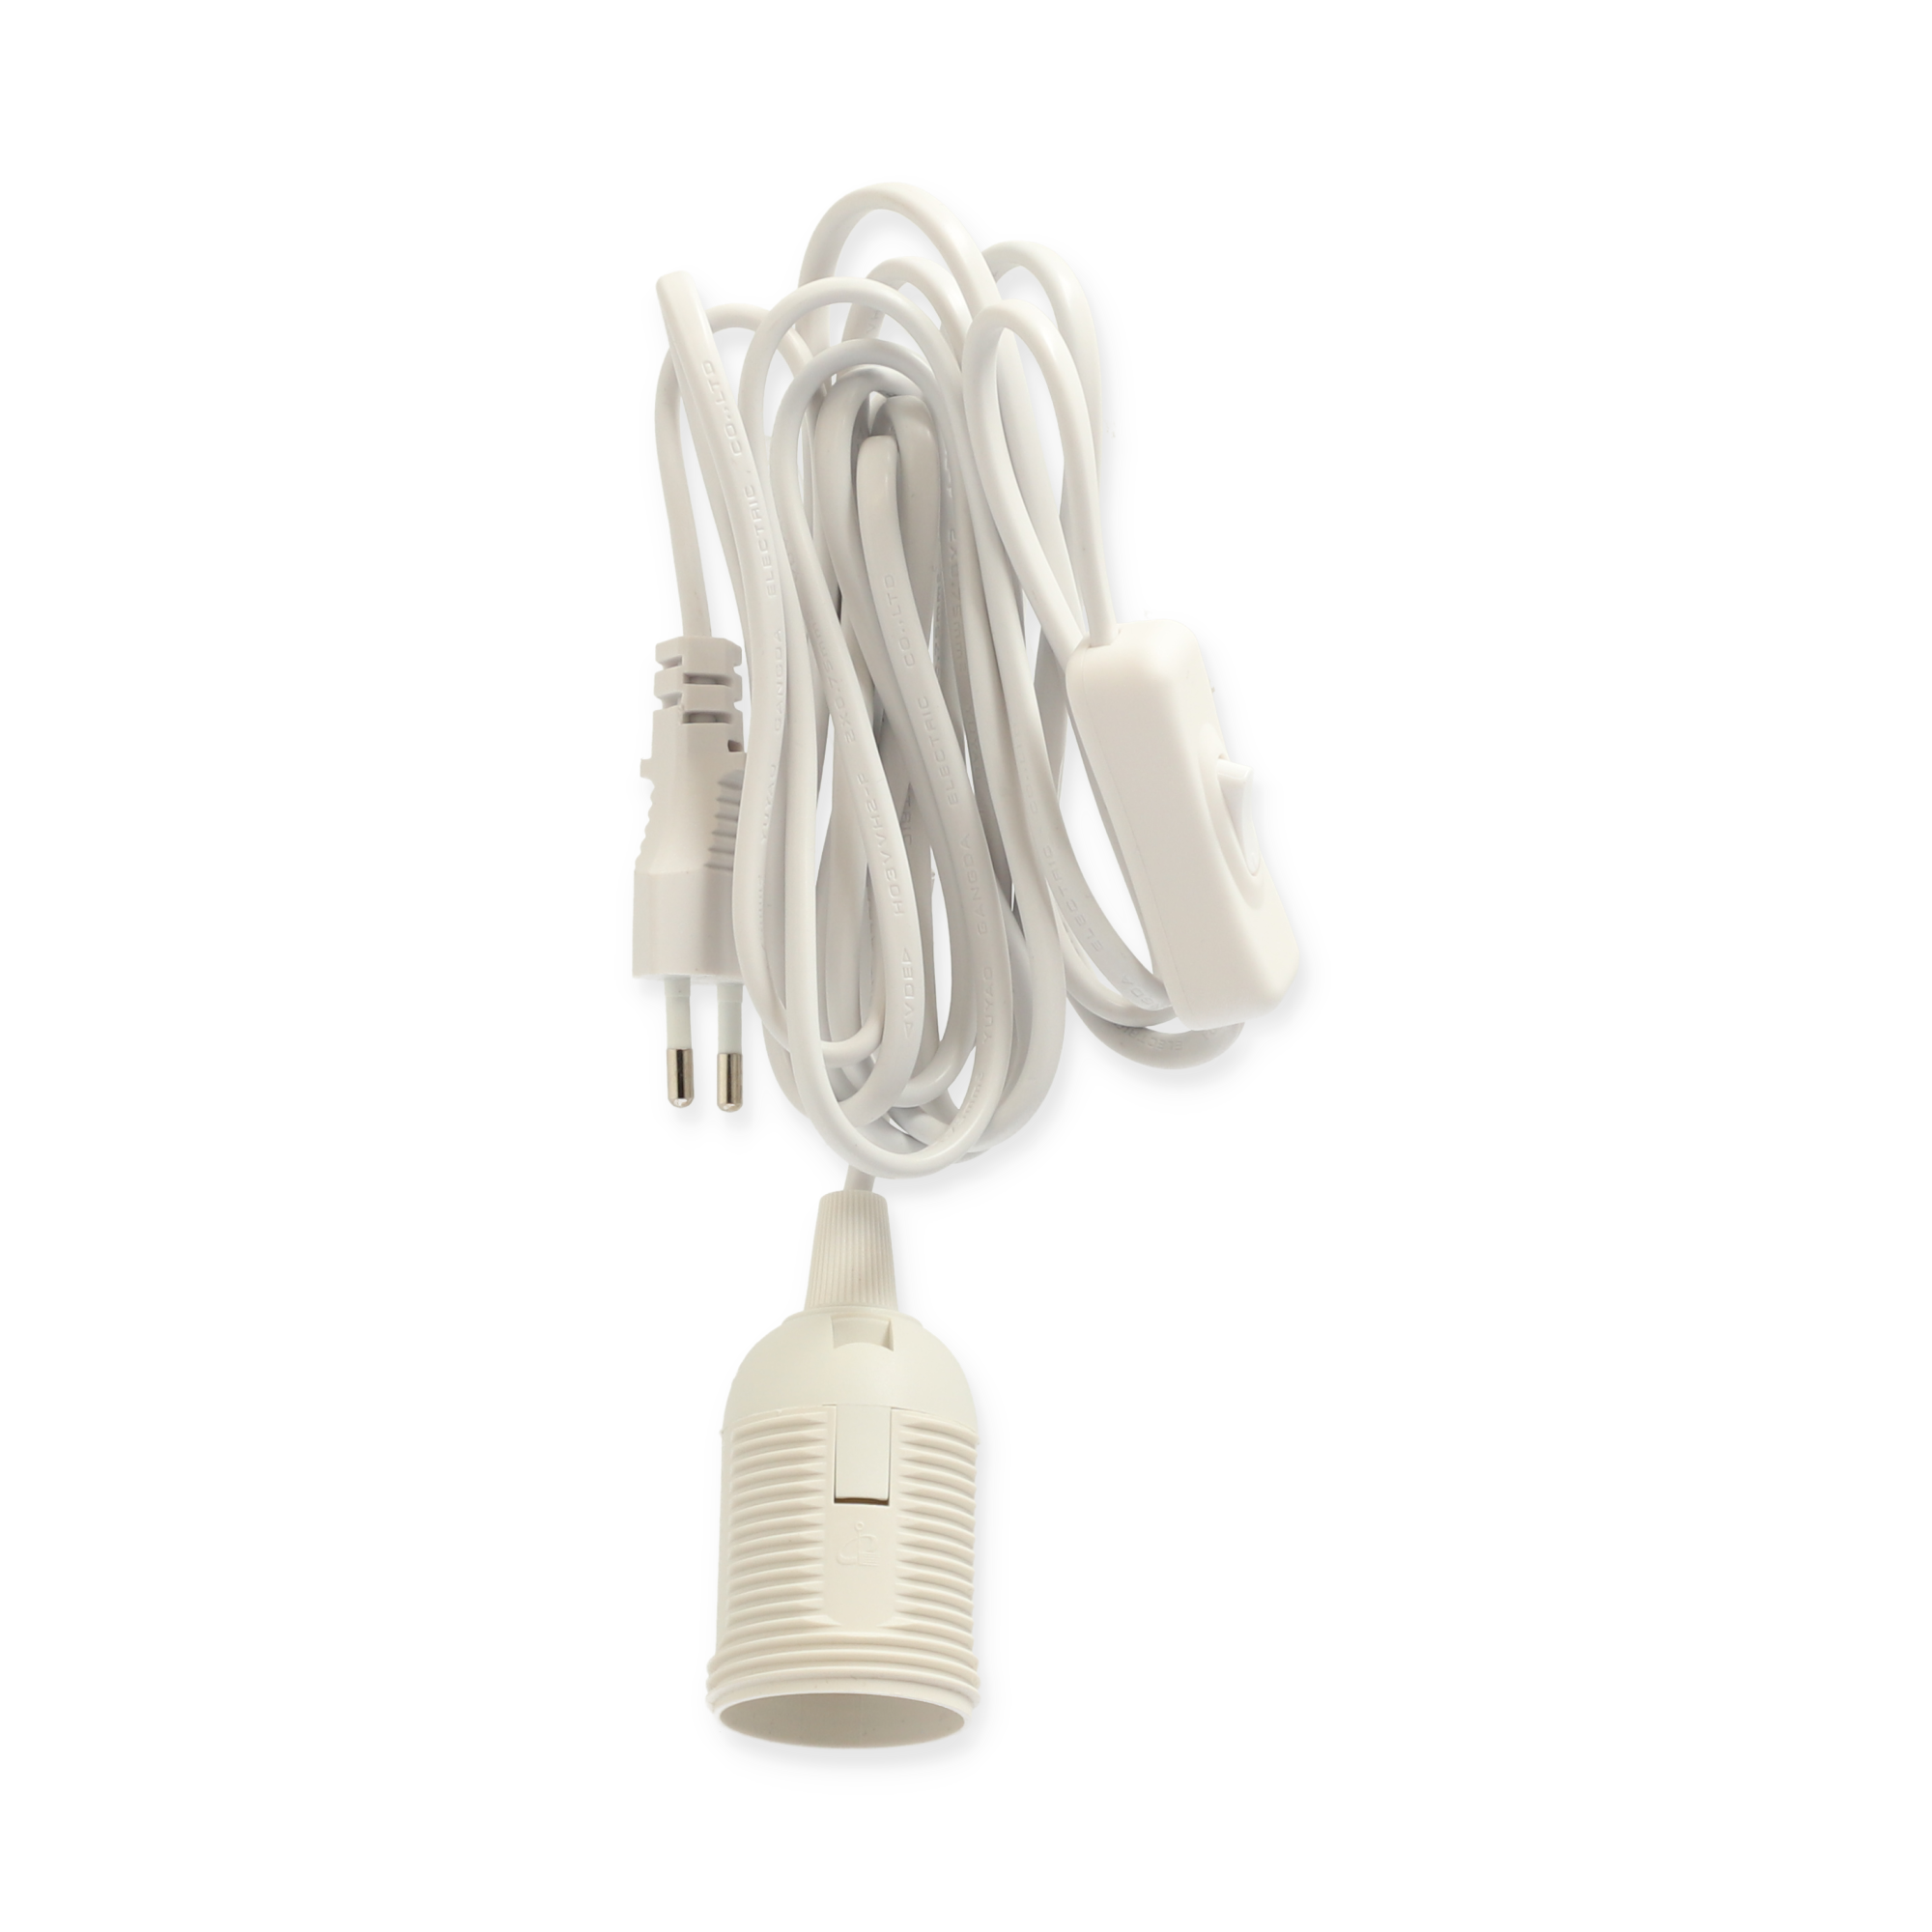 Lampenanschluss mit Schalter weiß E14 3 m + product picture